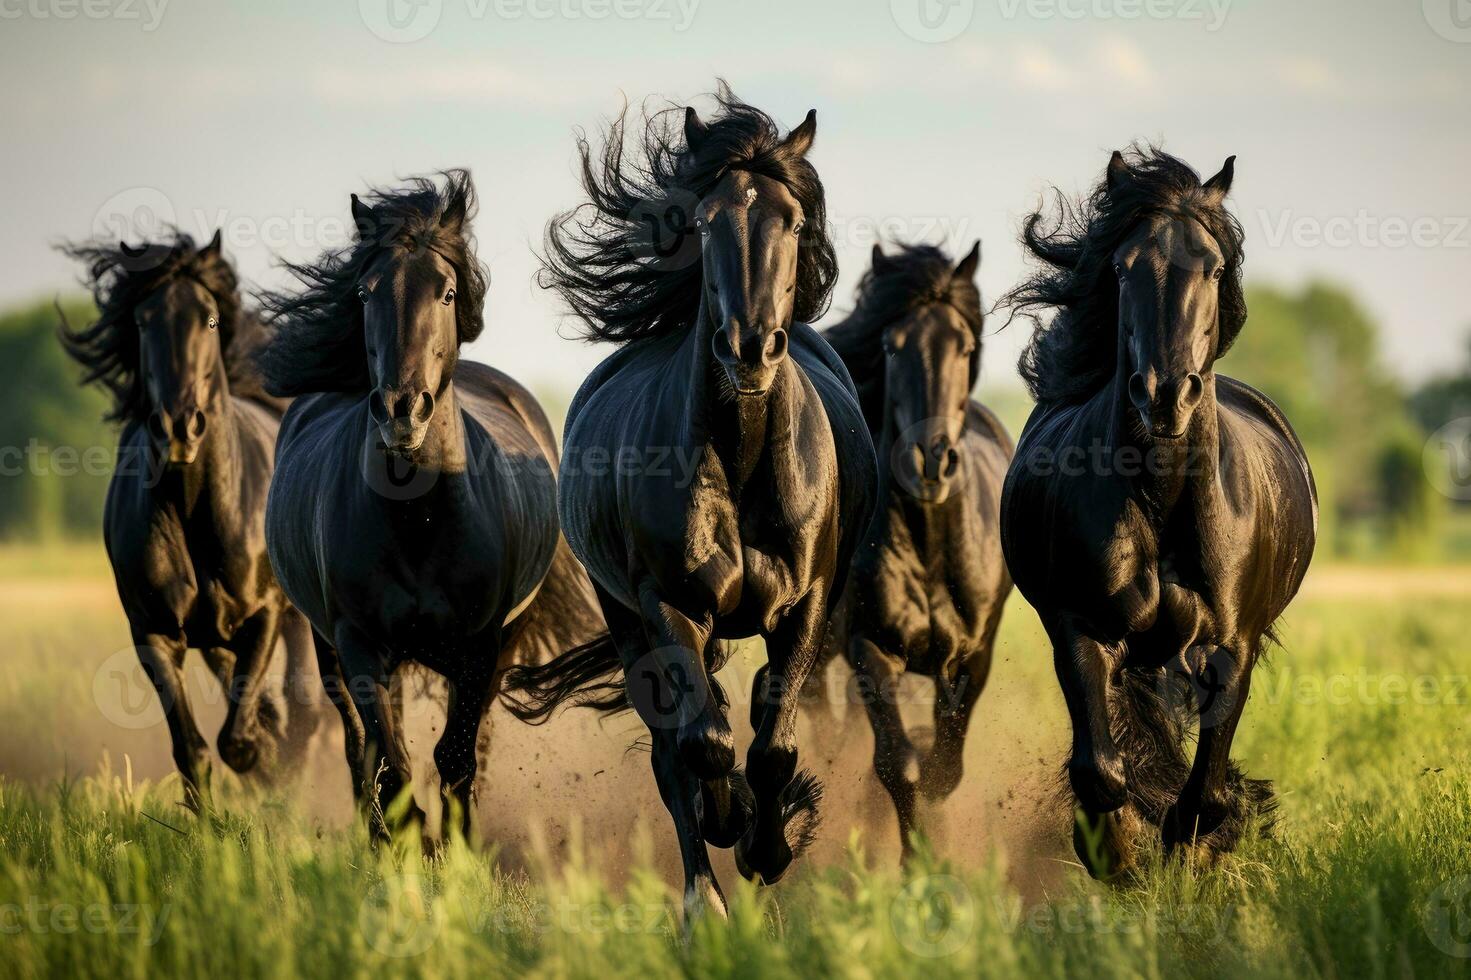 manada de frisón negro caballos Galopando en el césped foto